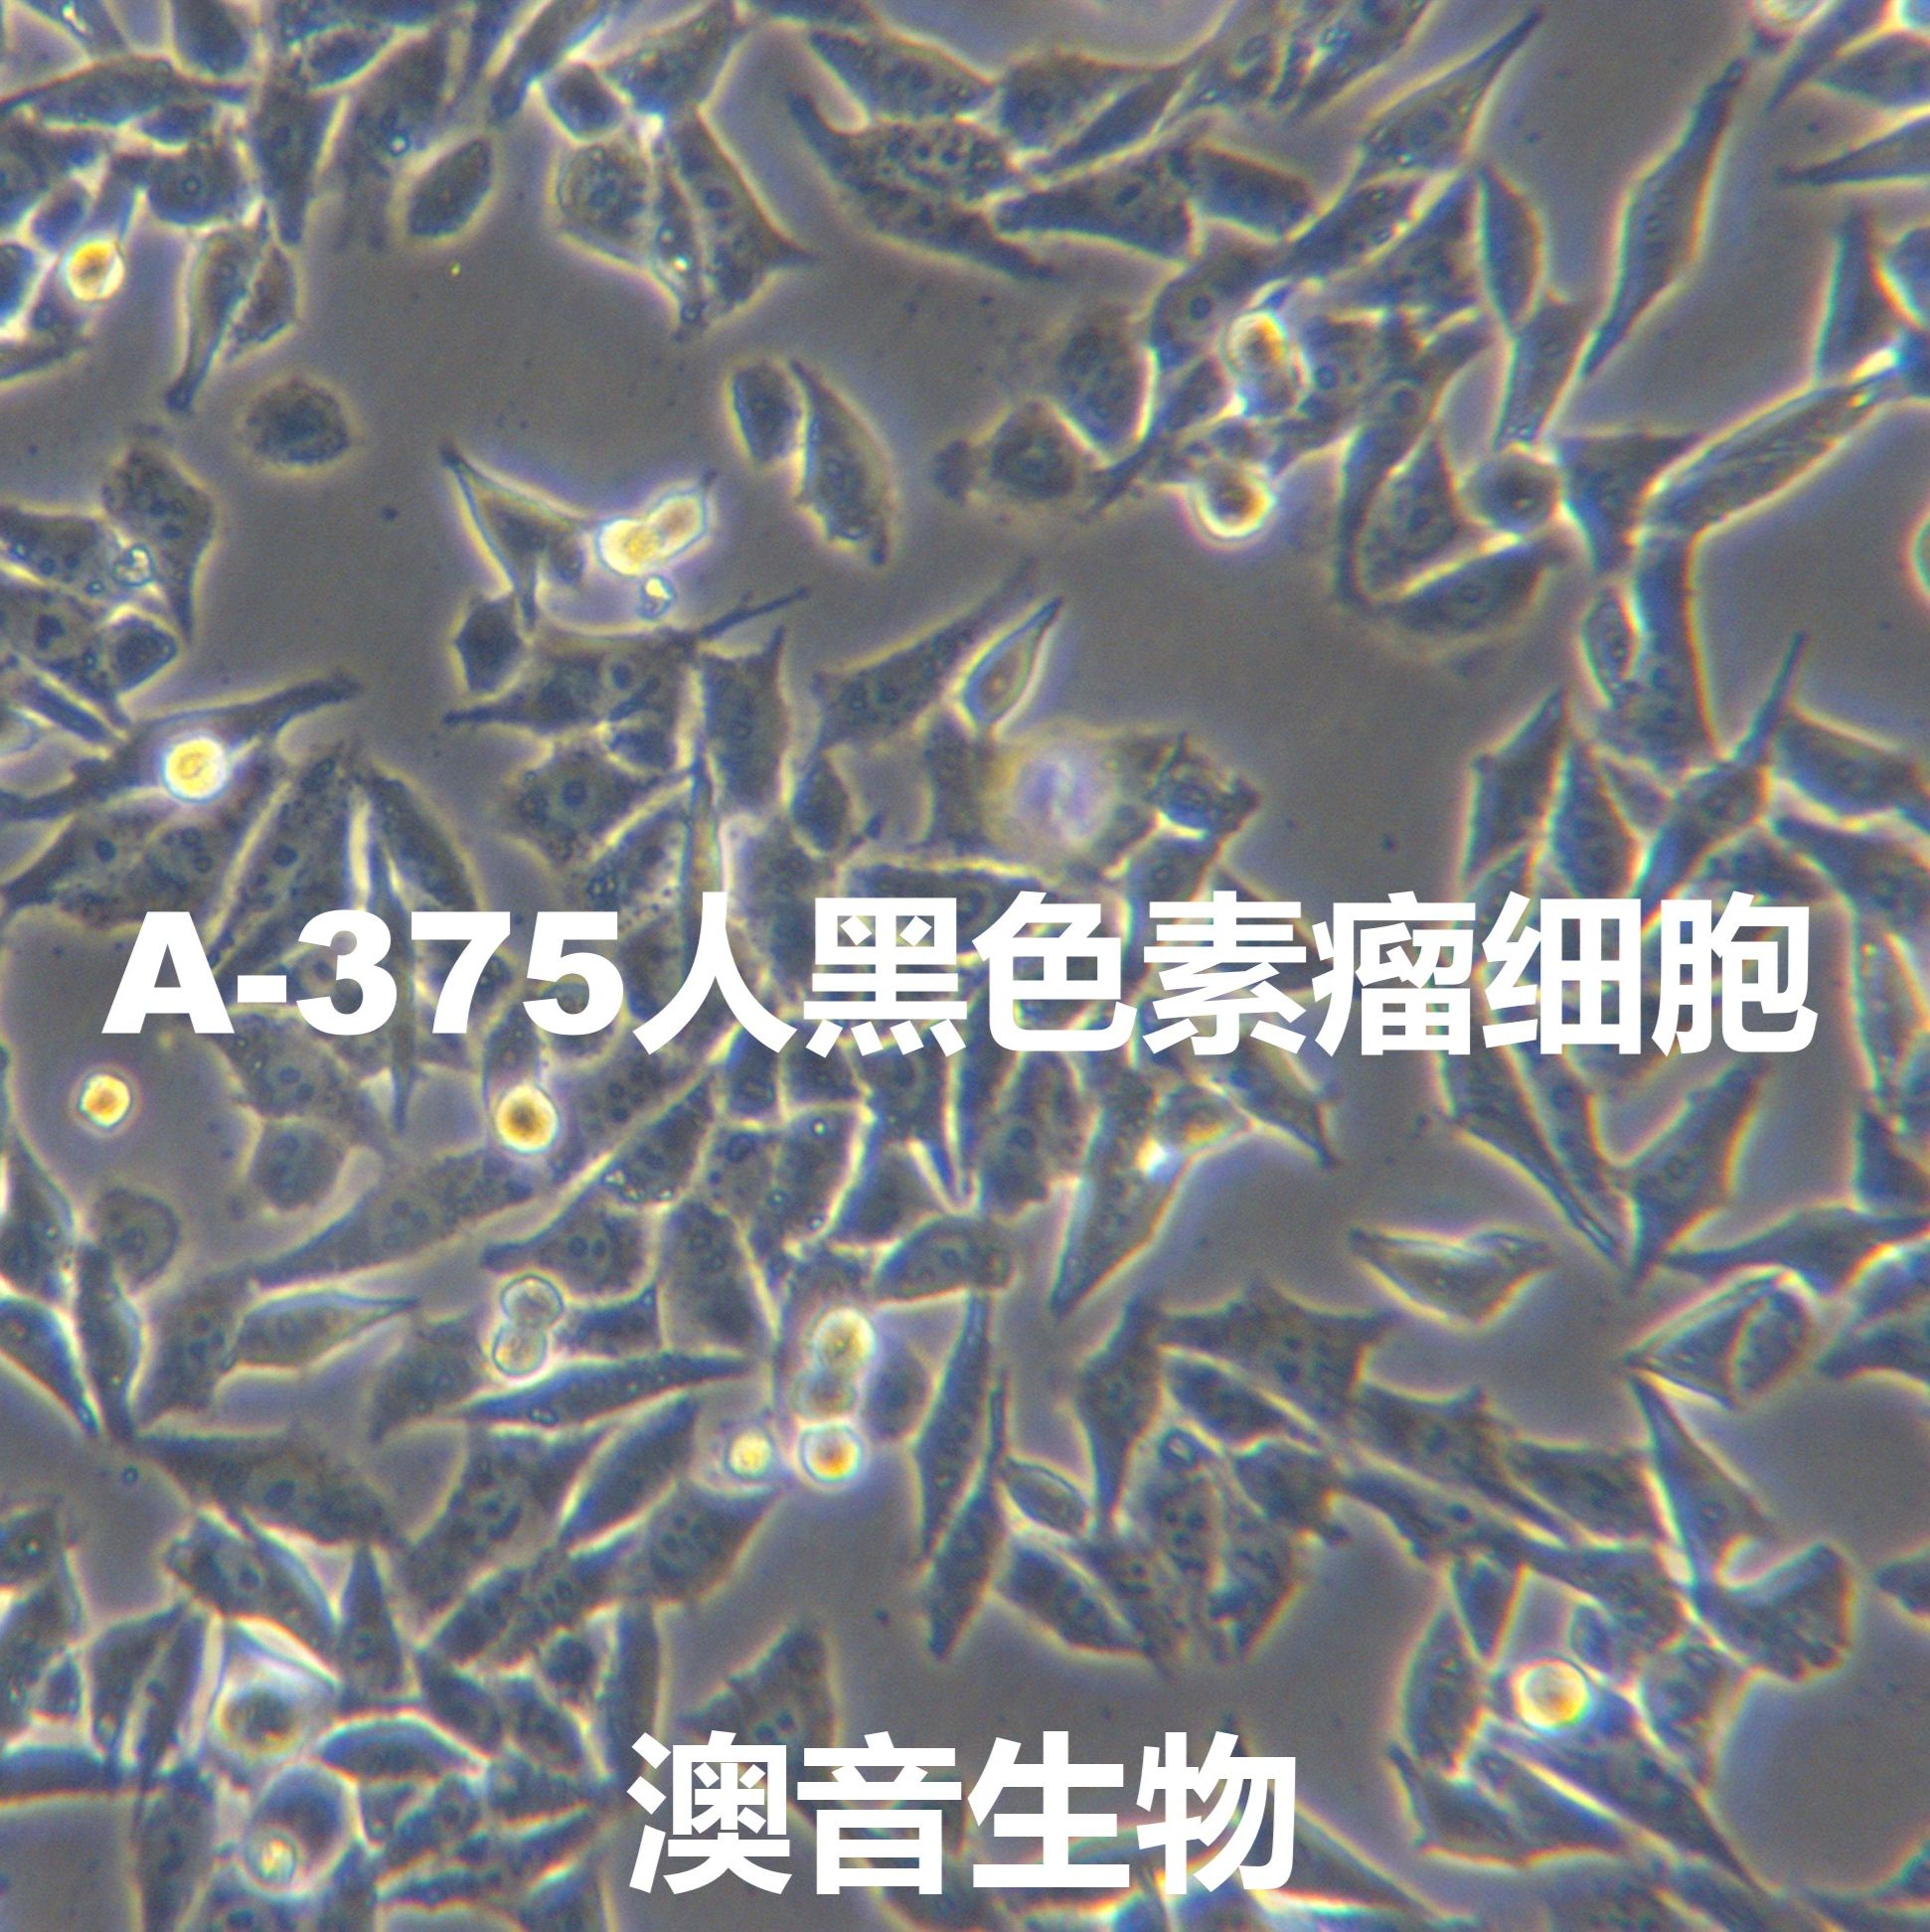 A375[A 375; A-375; A375-MEL; A375-mel; A375mel]人恶性黑色素瘤细胞